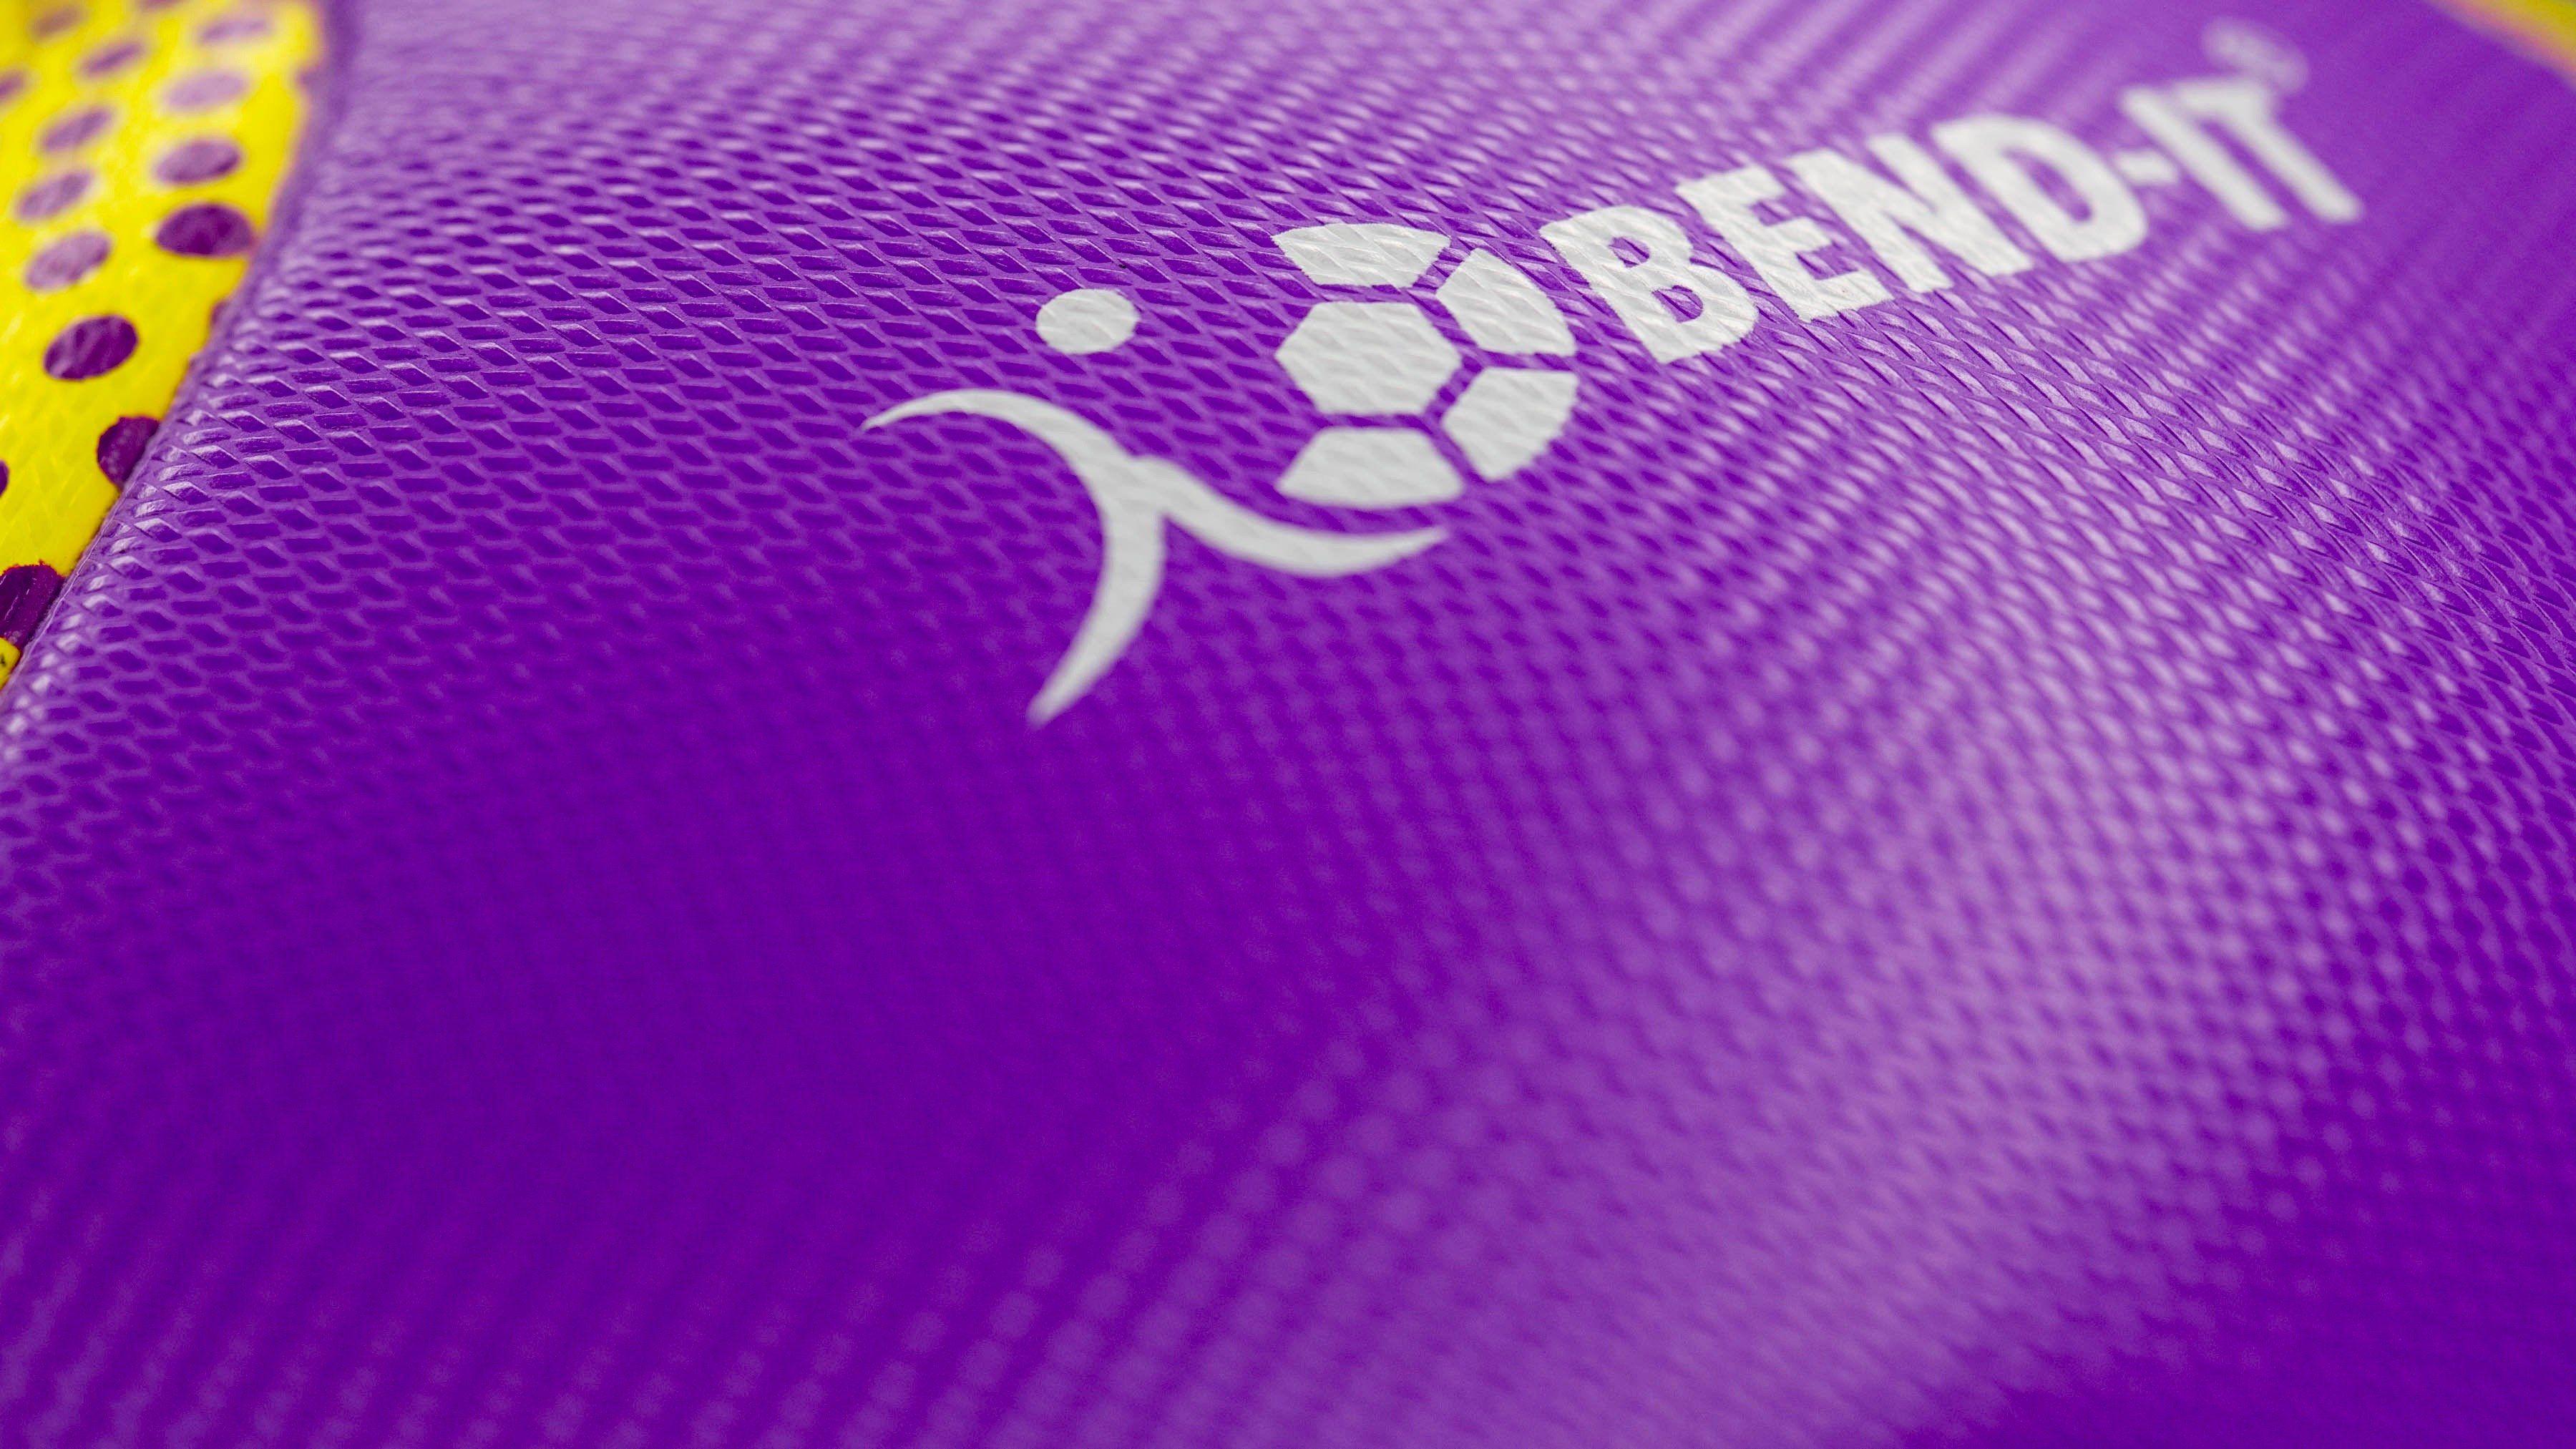 Five Ball Diadora Logo - Bend It Soccer, Reverse Curl It Premium, Soccer Ball Match Ball